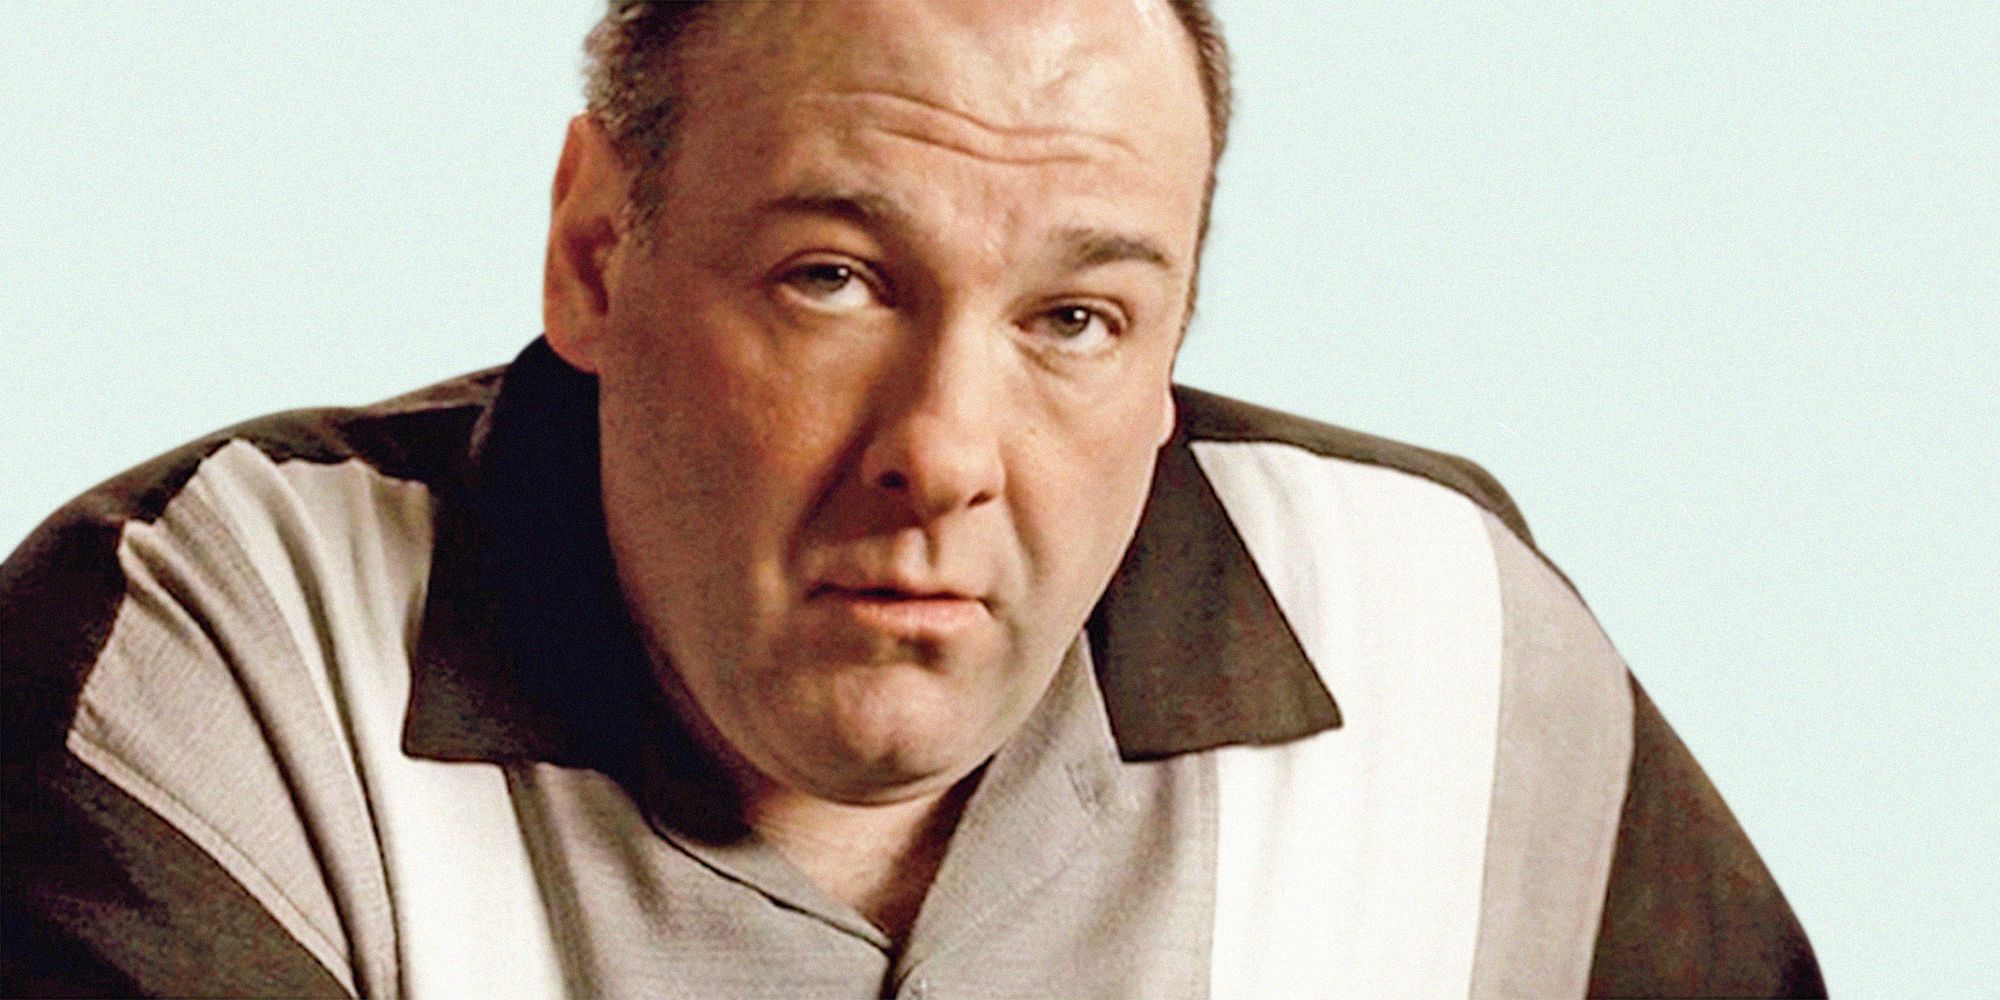 David Chase Talks Final Scene of The Sopranos - Did Tony Soprano Die?